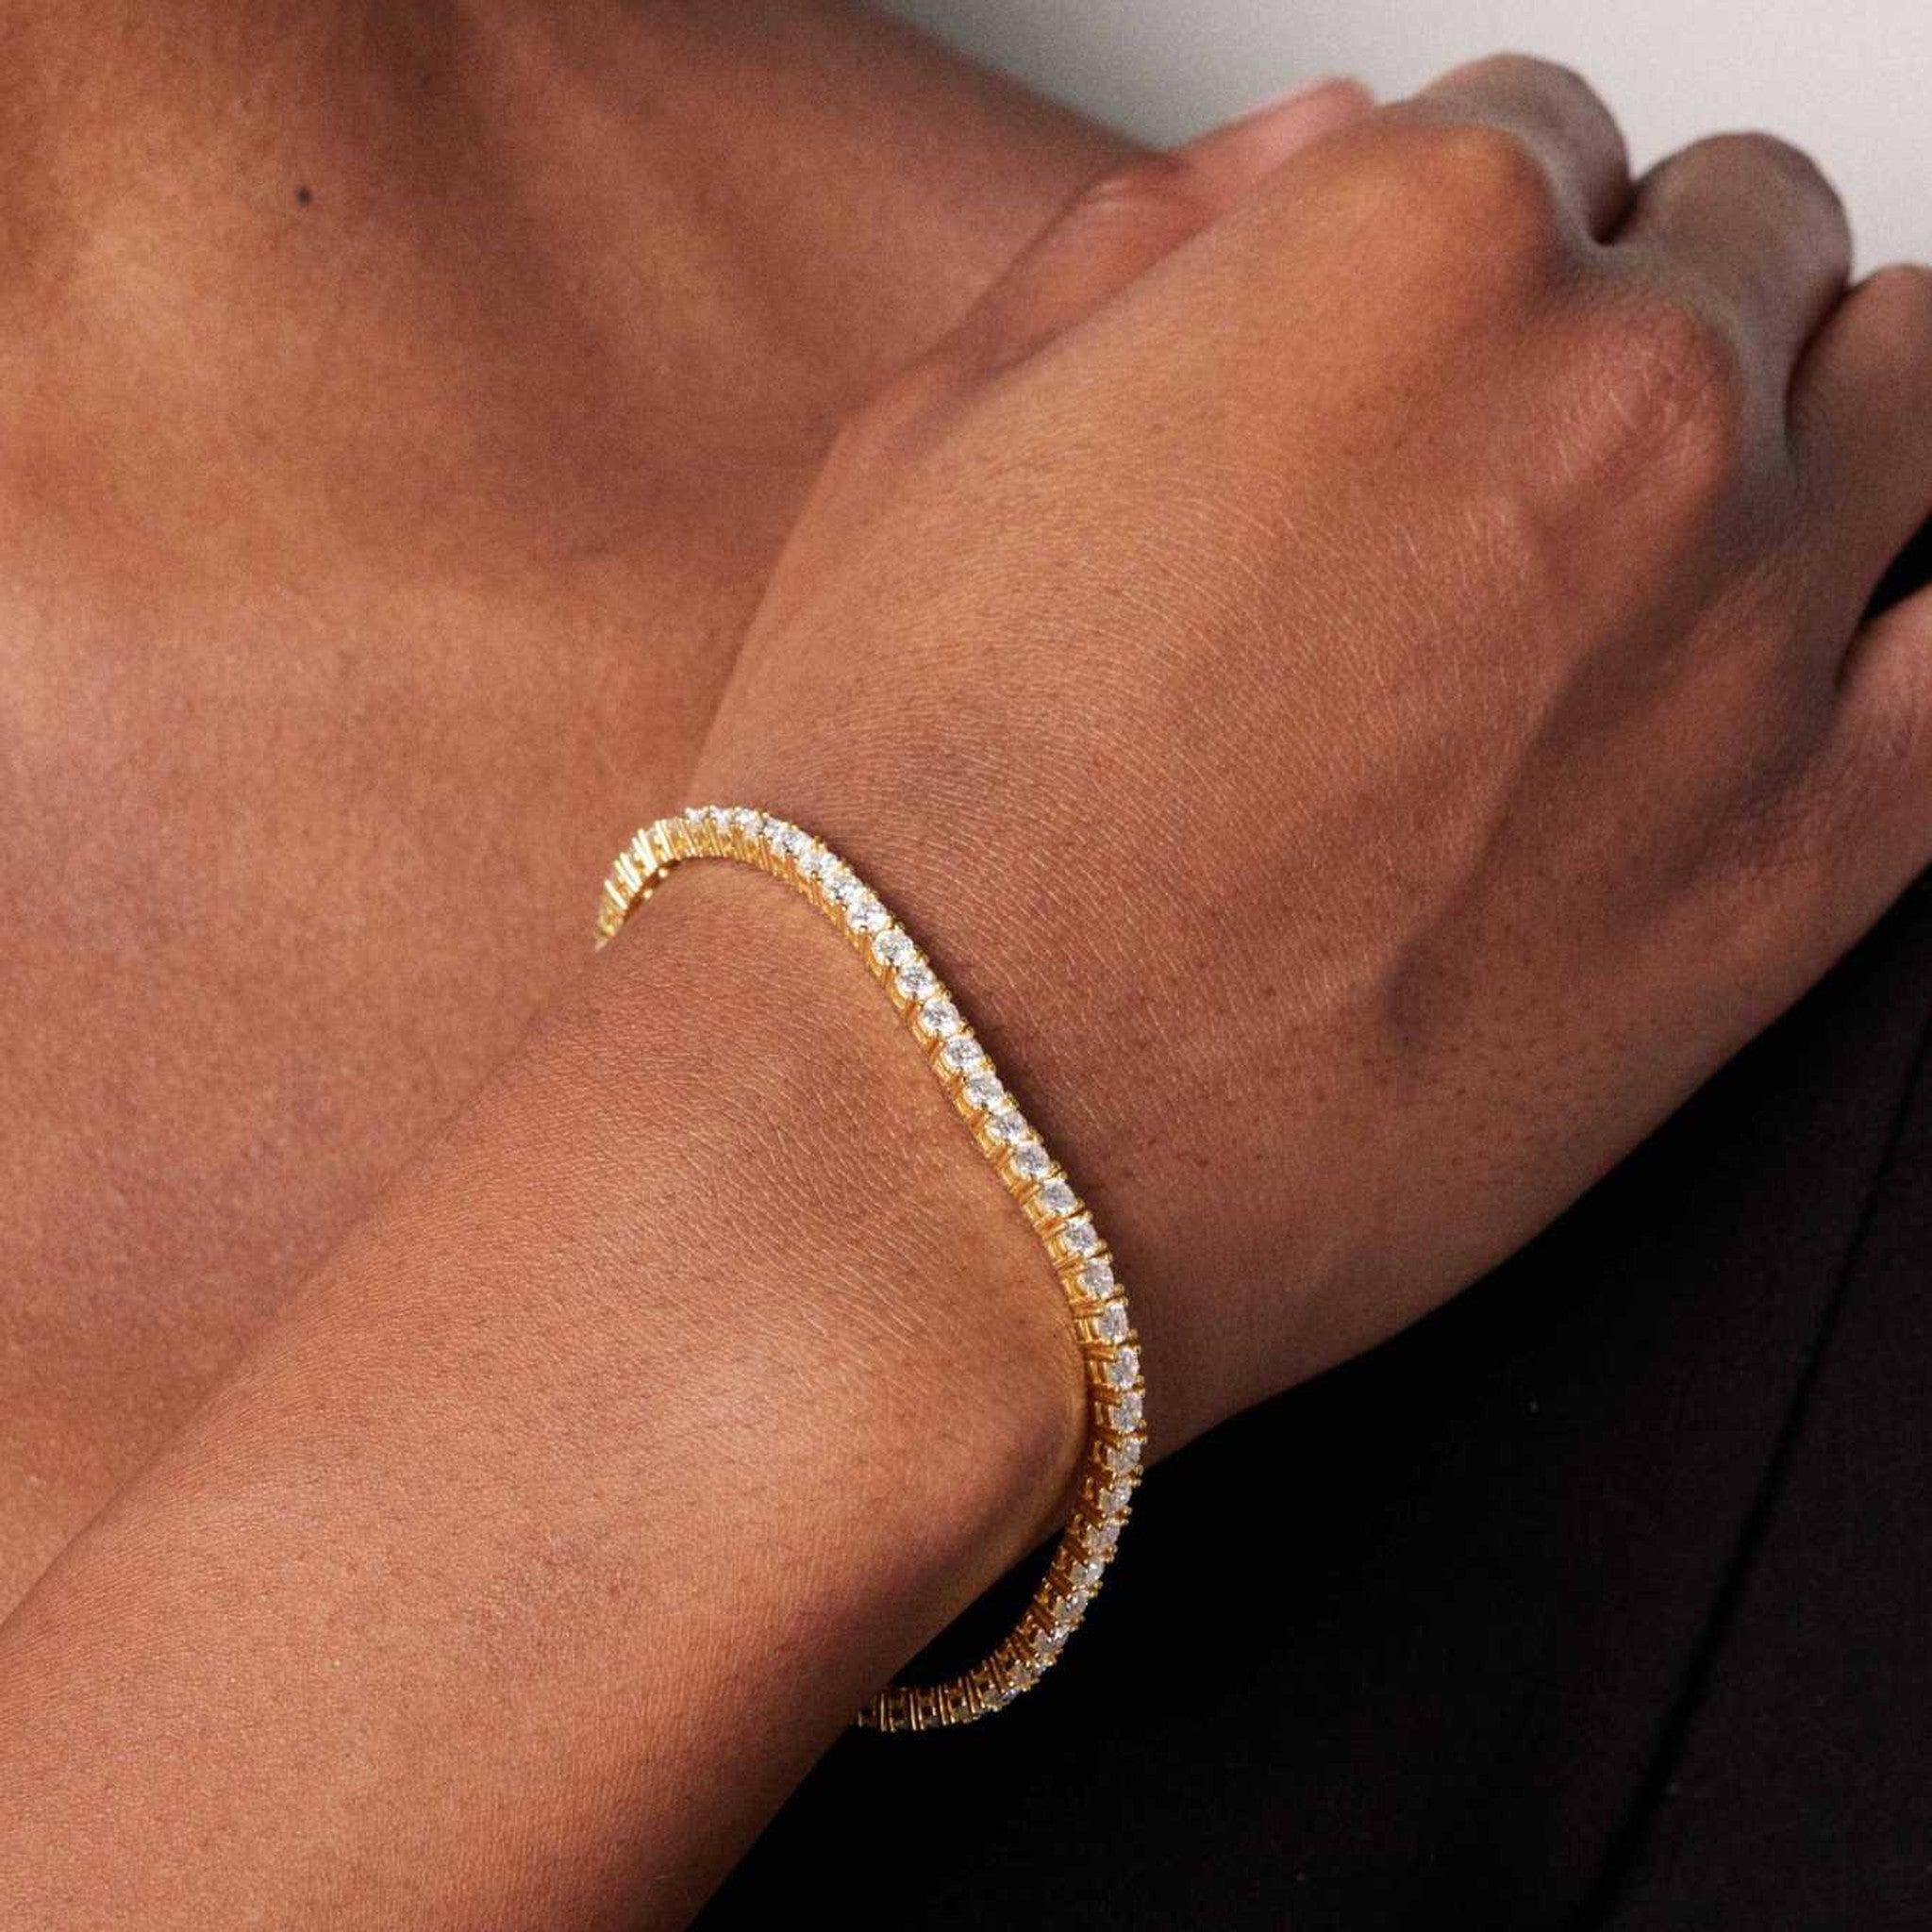 The Gold Moissanite Tennis Bracelet